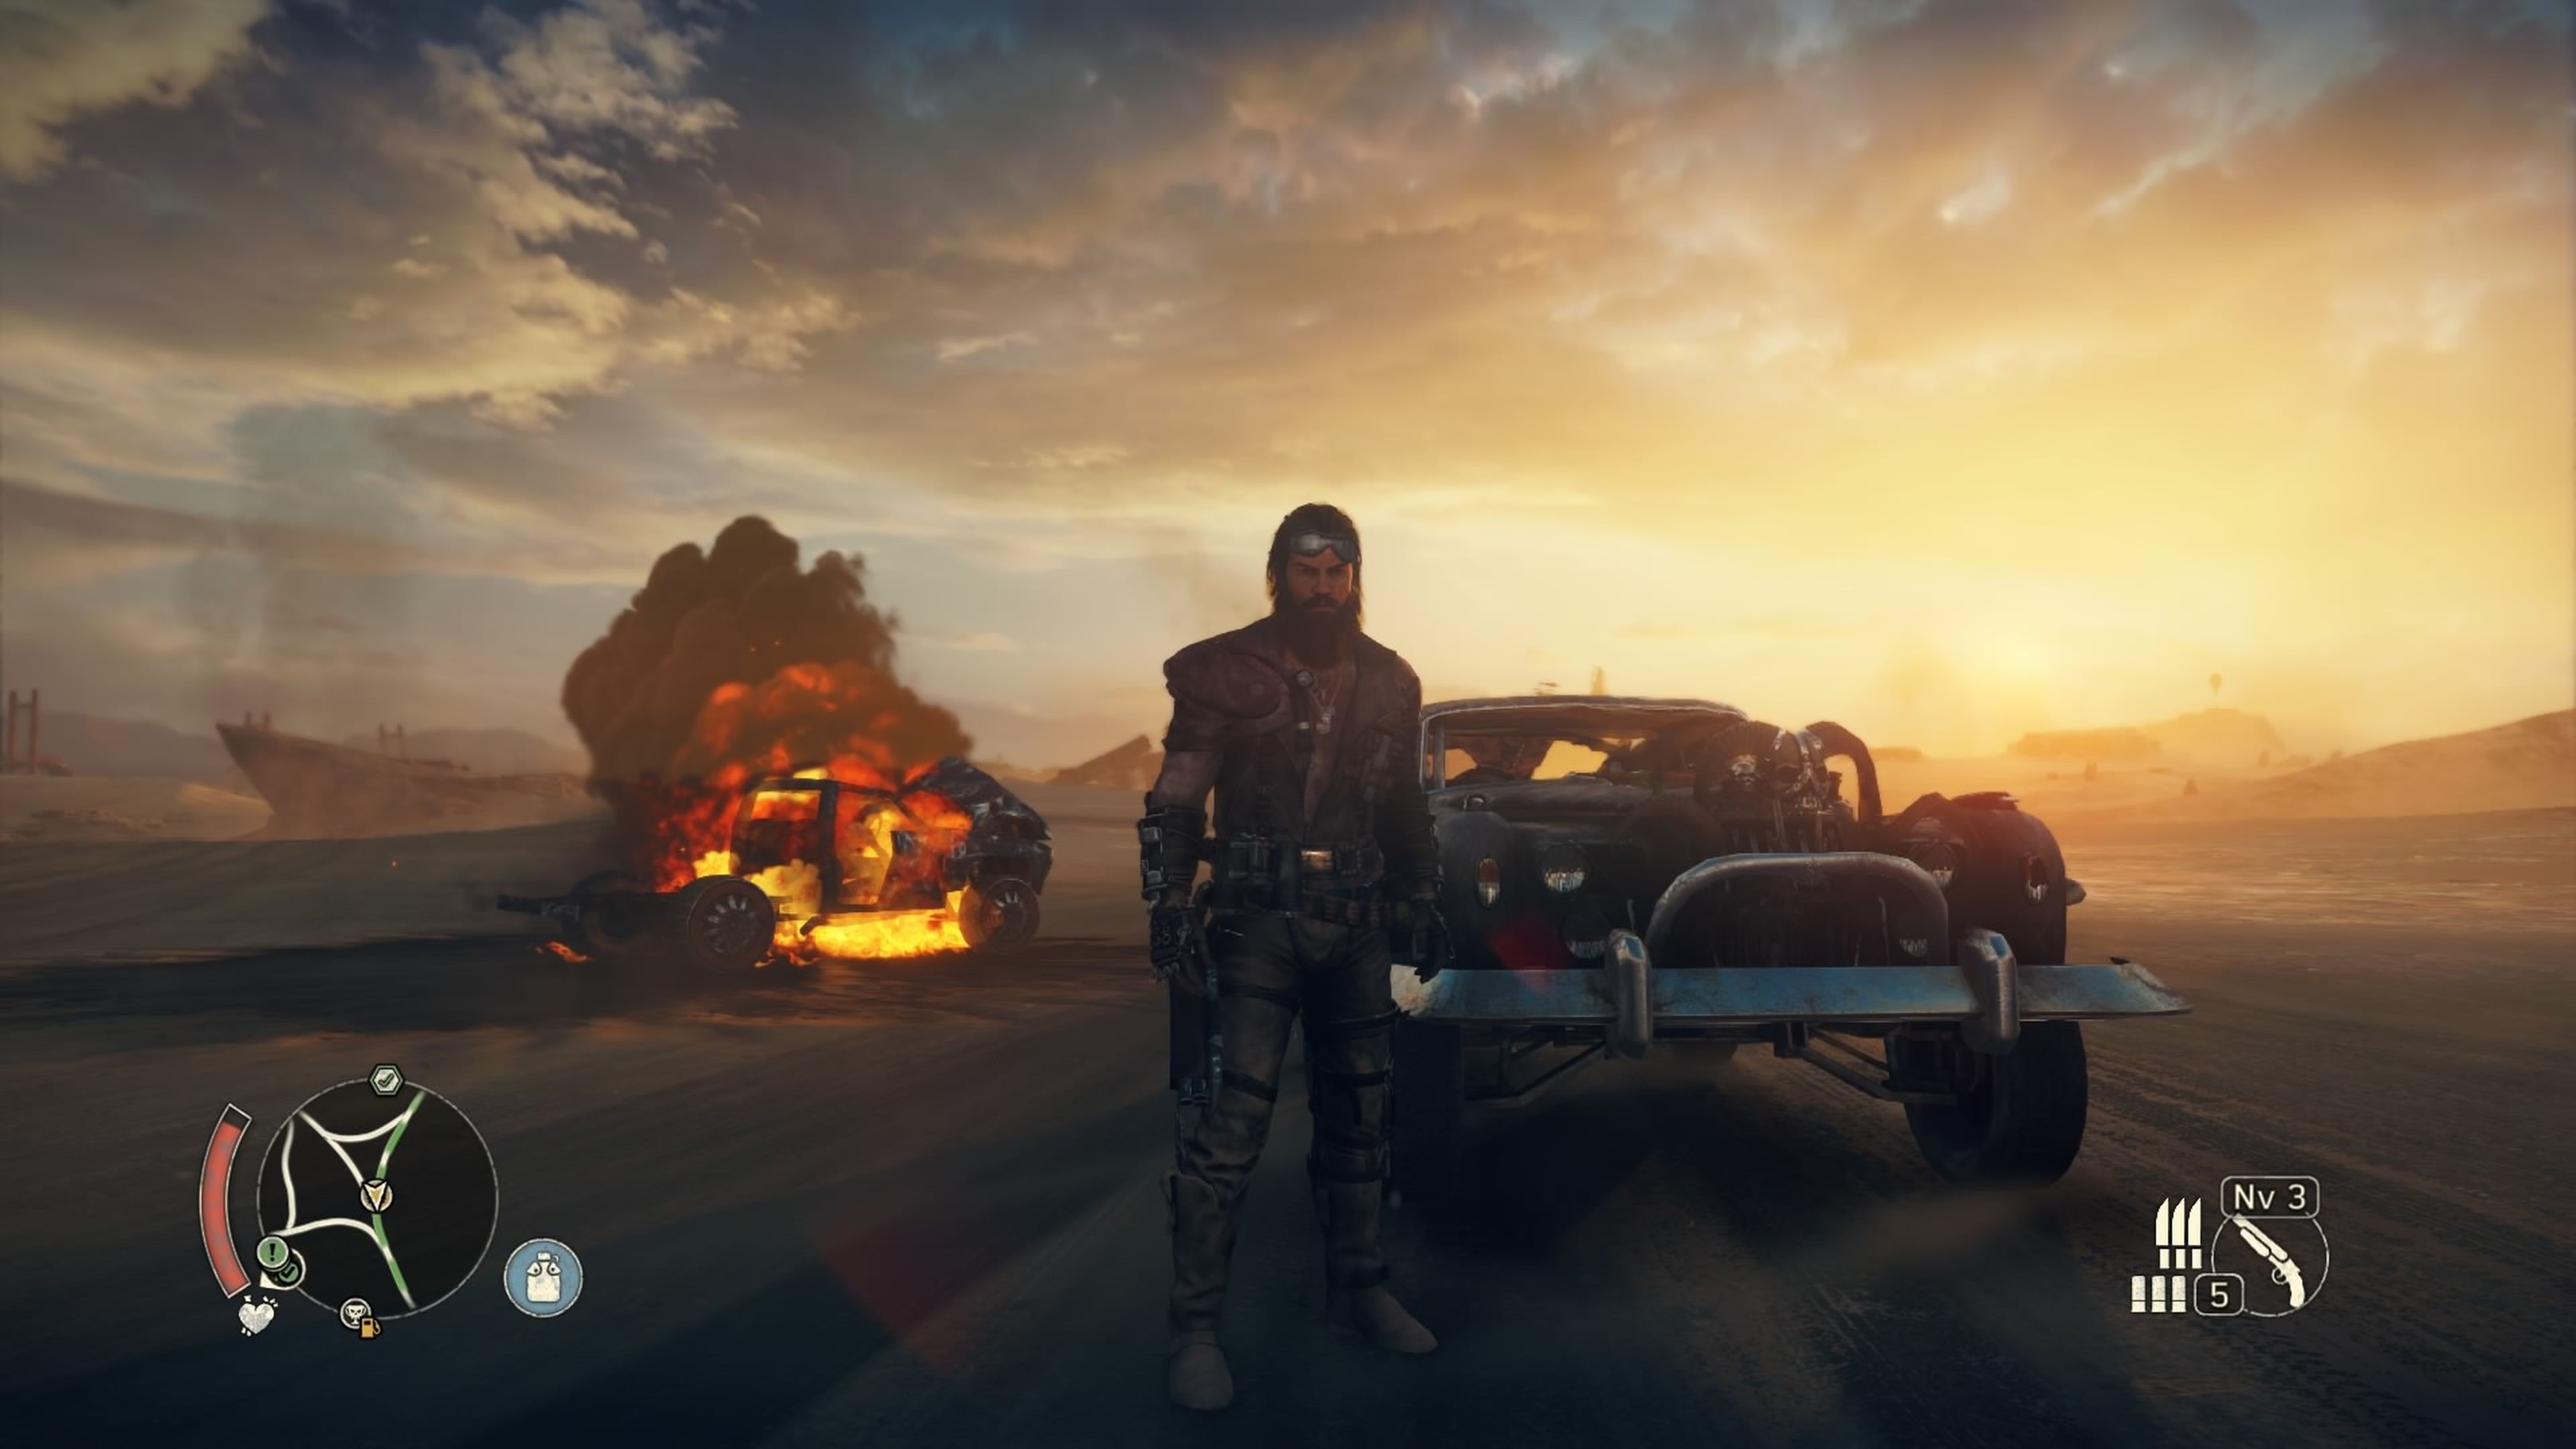 Análisis de Mad Max en PS4, Xbox One y PC